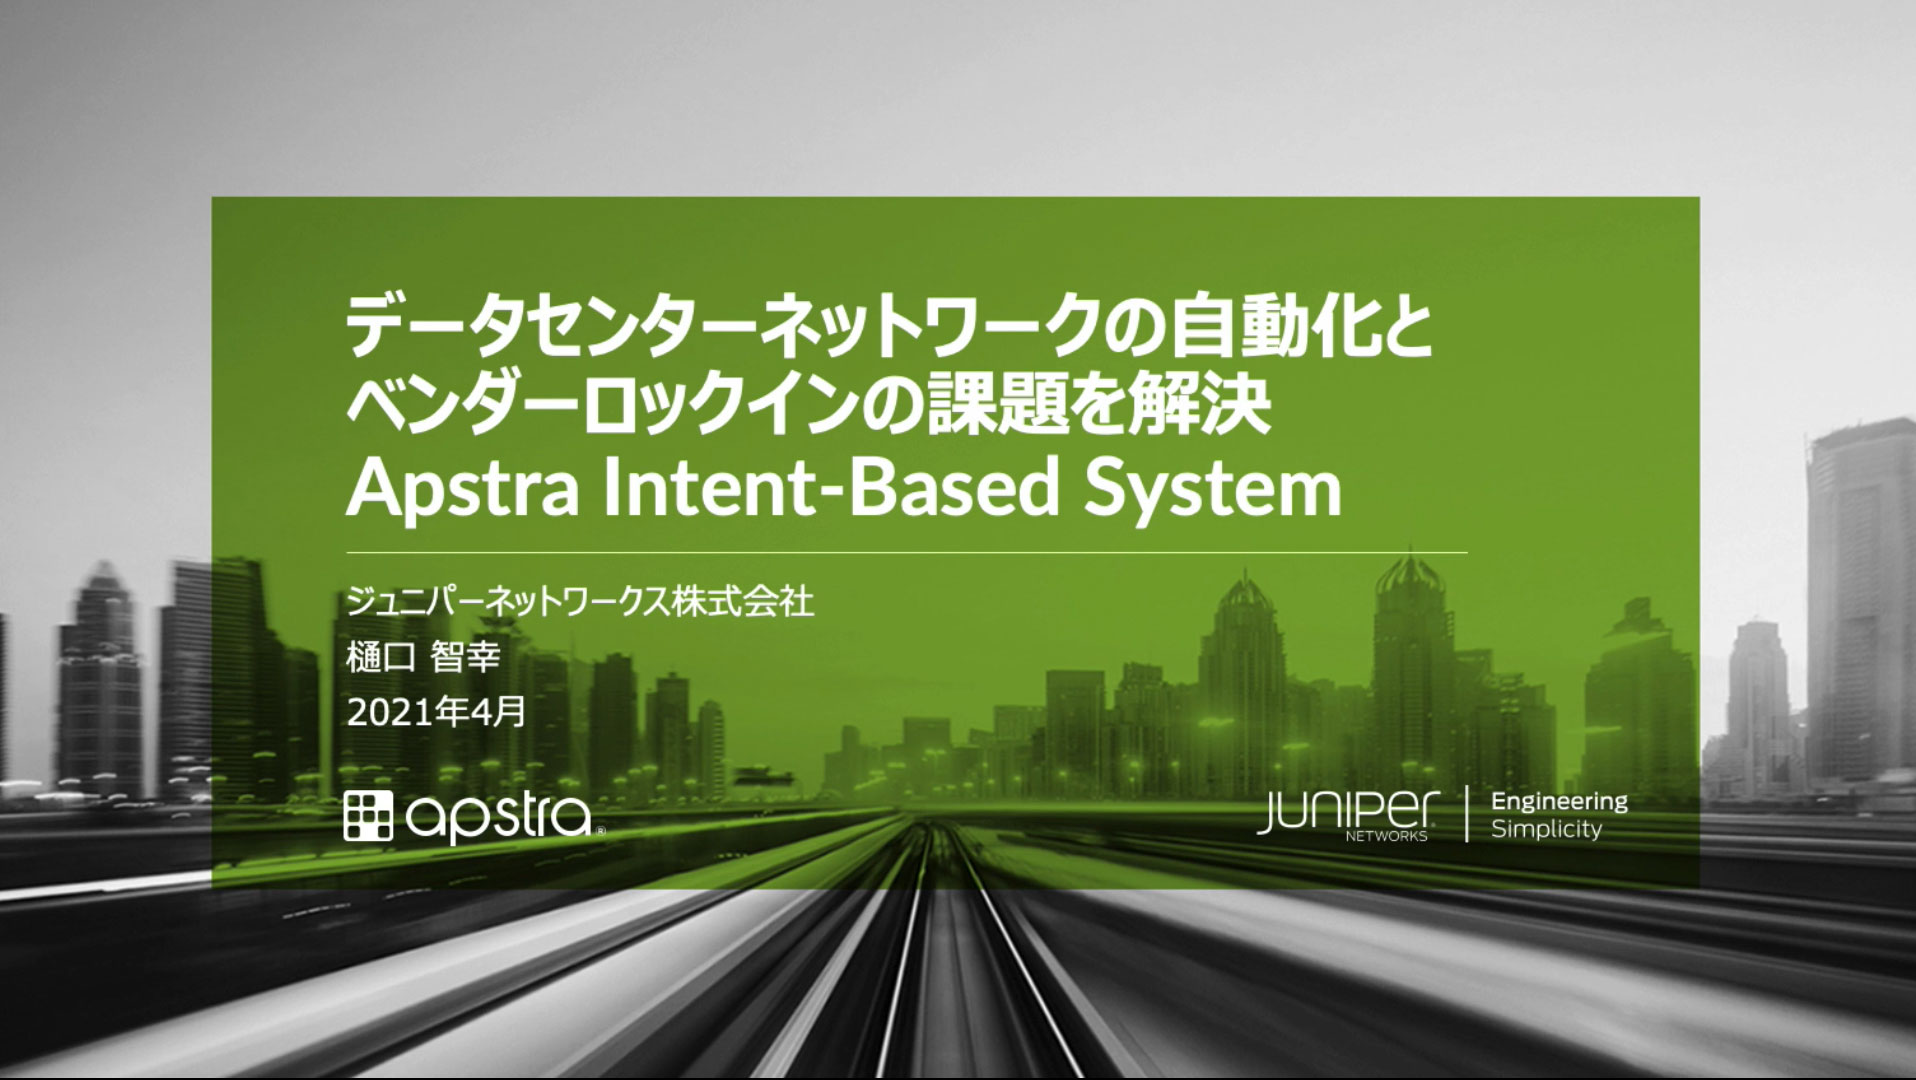 《動画》データセンターネットワークの自動化とベンダーロックインの課題を解決 – Apstra Intent-Based System –